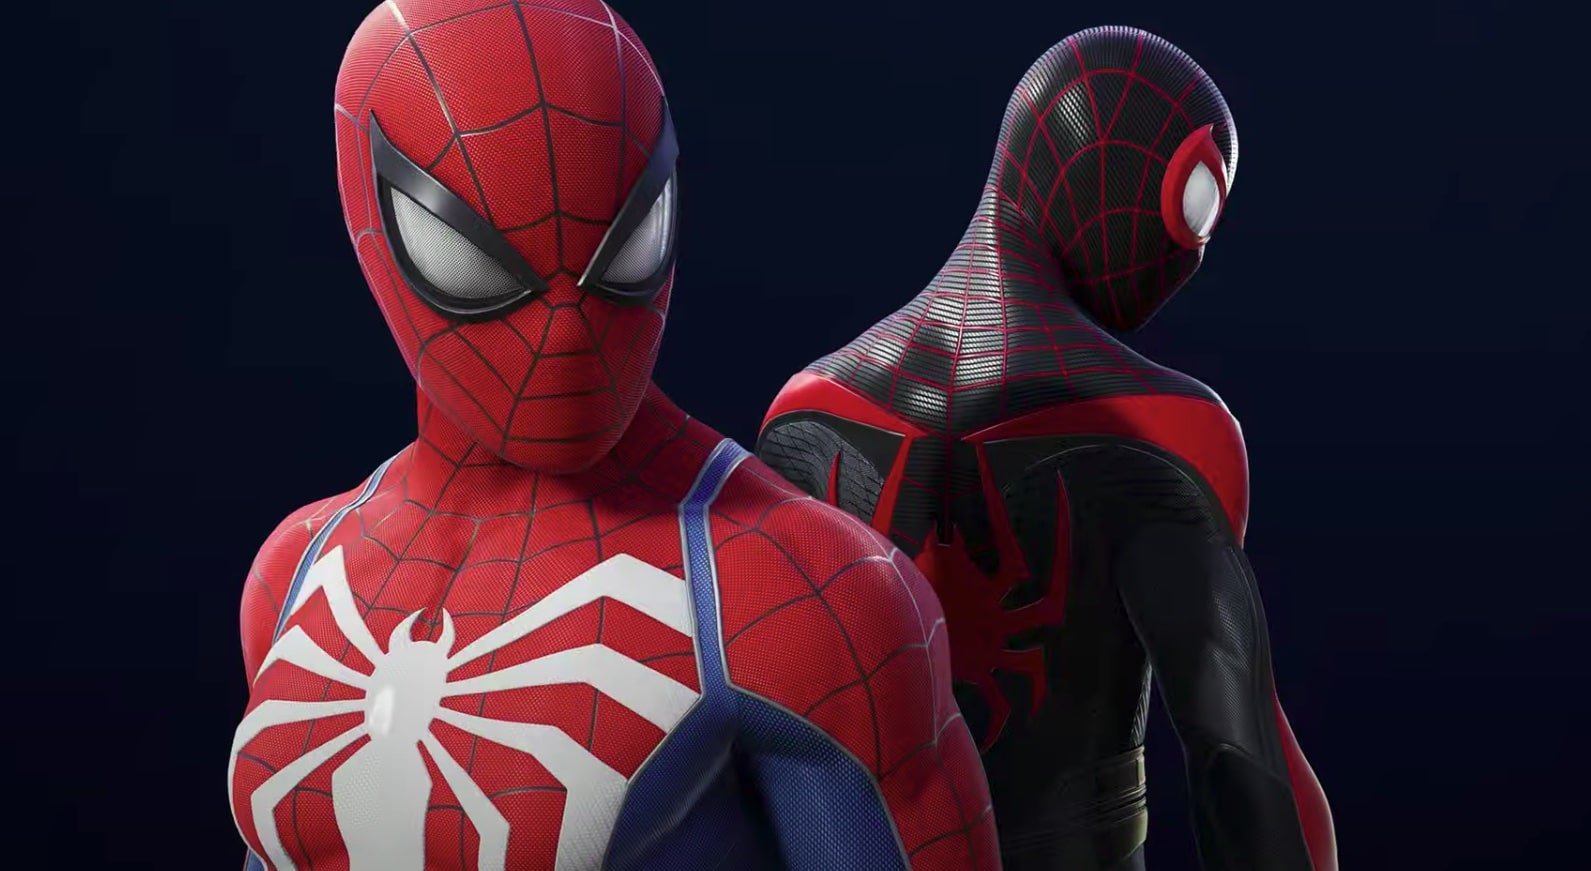 Marvel's Spider-Man 2 – Trailer De Lançamento I PS5 